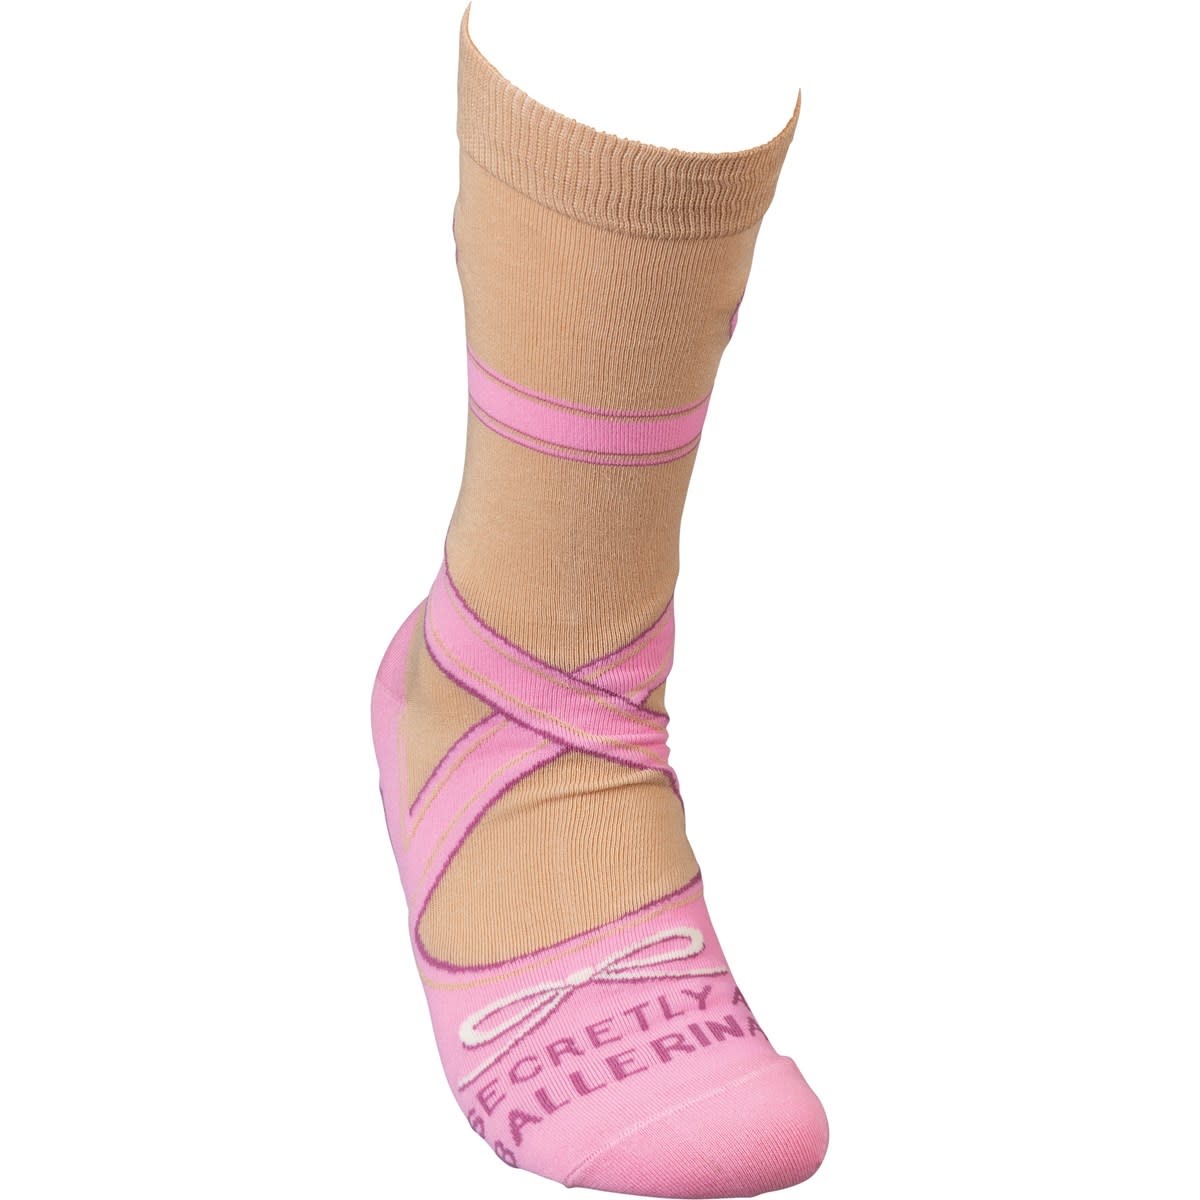 Secretly A Ballerina Socks - Evolve For The Home Online